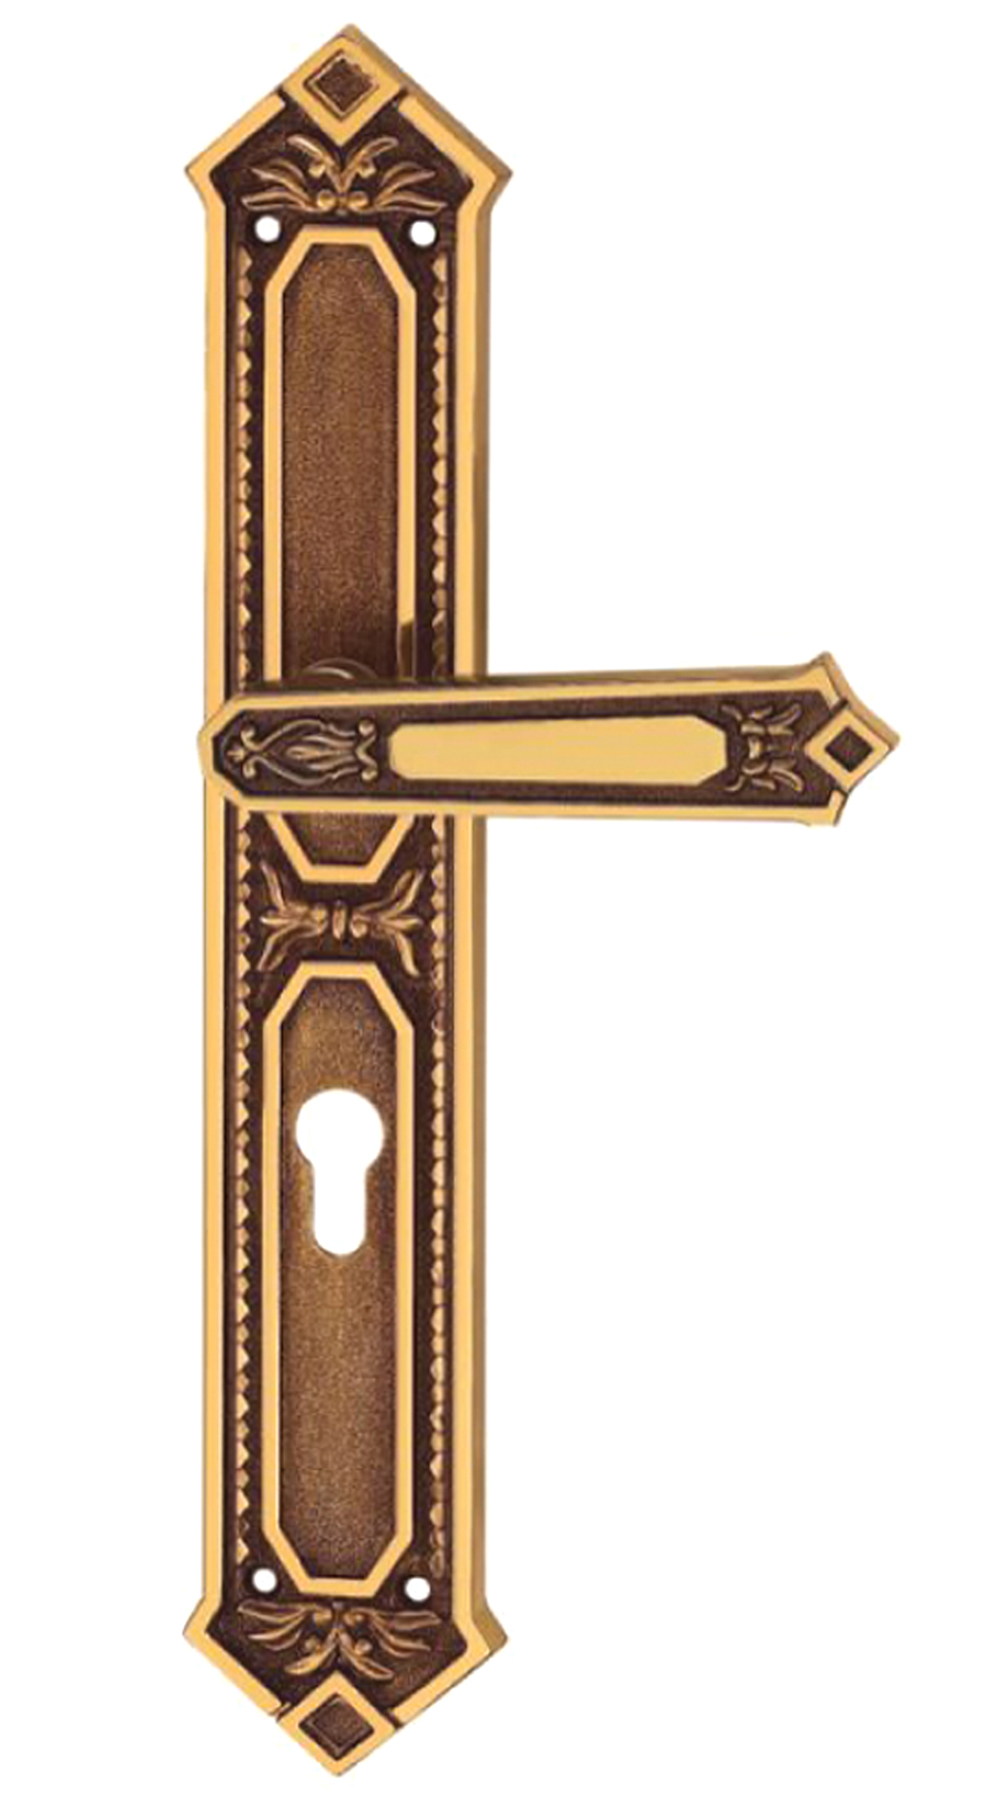 cửa gỗ - cửa gỗ lim - cửa gỗ lim lào - khóa tay gạt đồng cho cửa gỗ